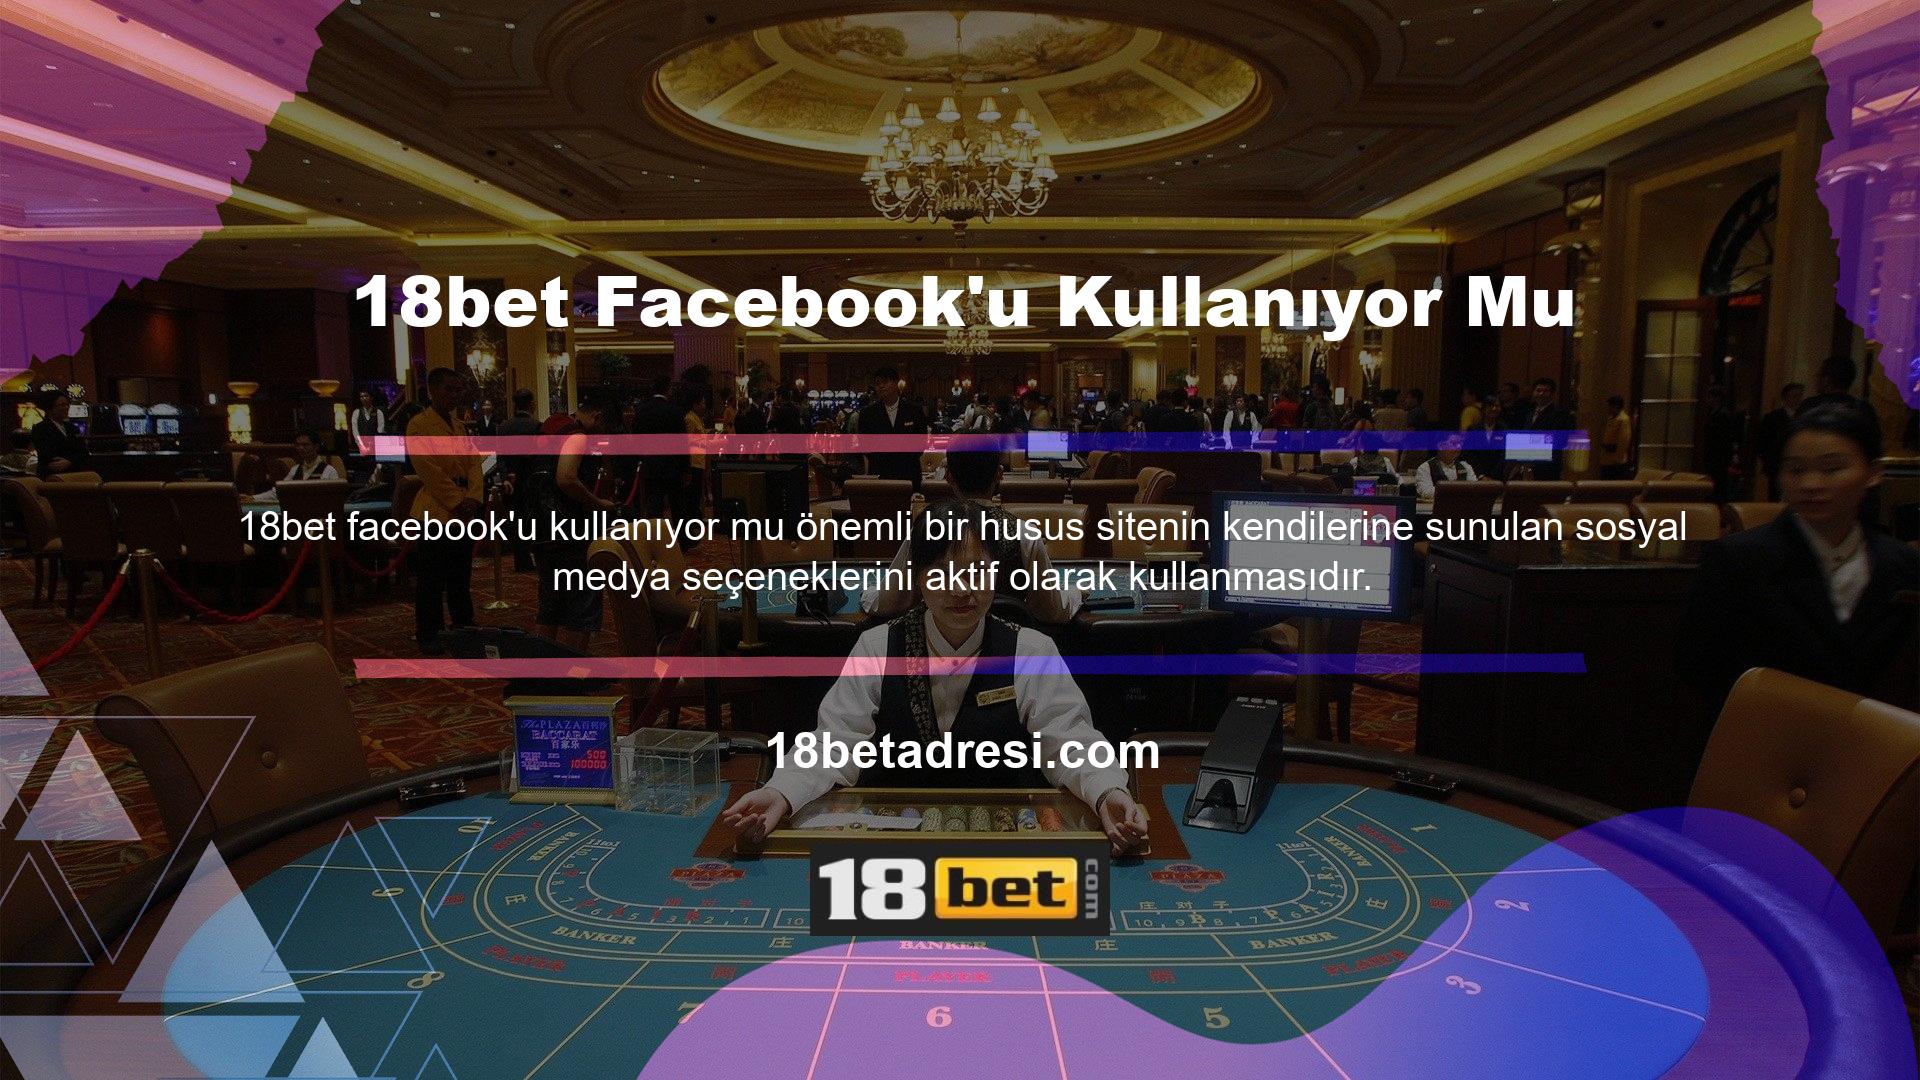 Bahisçilerin sosyal medya seçenekleriyle ilgili sorusu 18bet Facebook'u aktif olarak kullanıp kullanmadığı sorusunu içeriyor